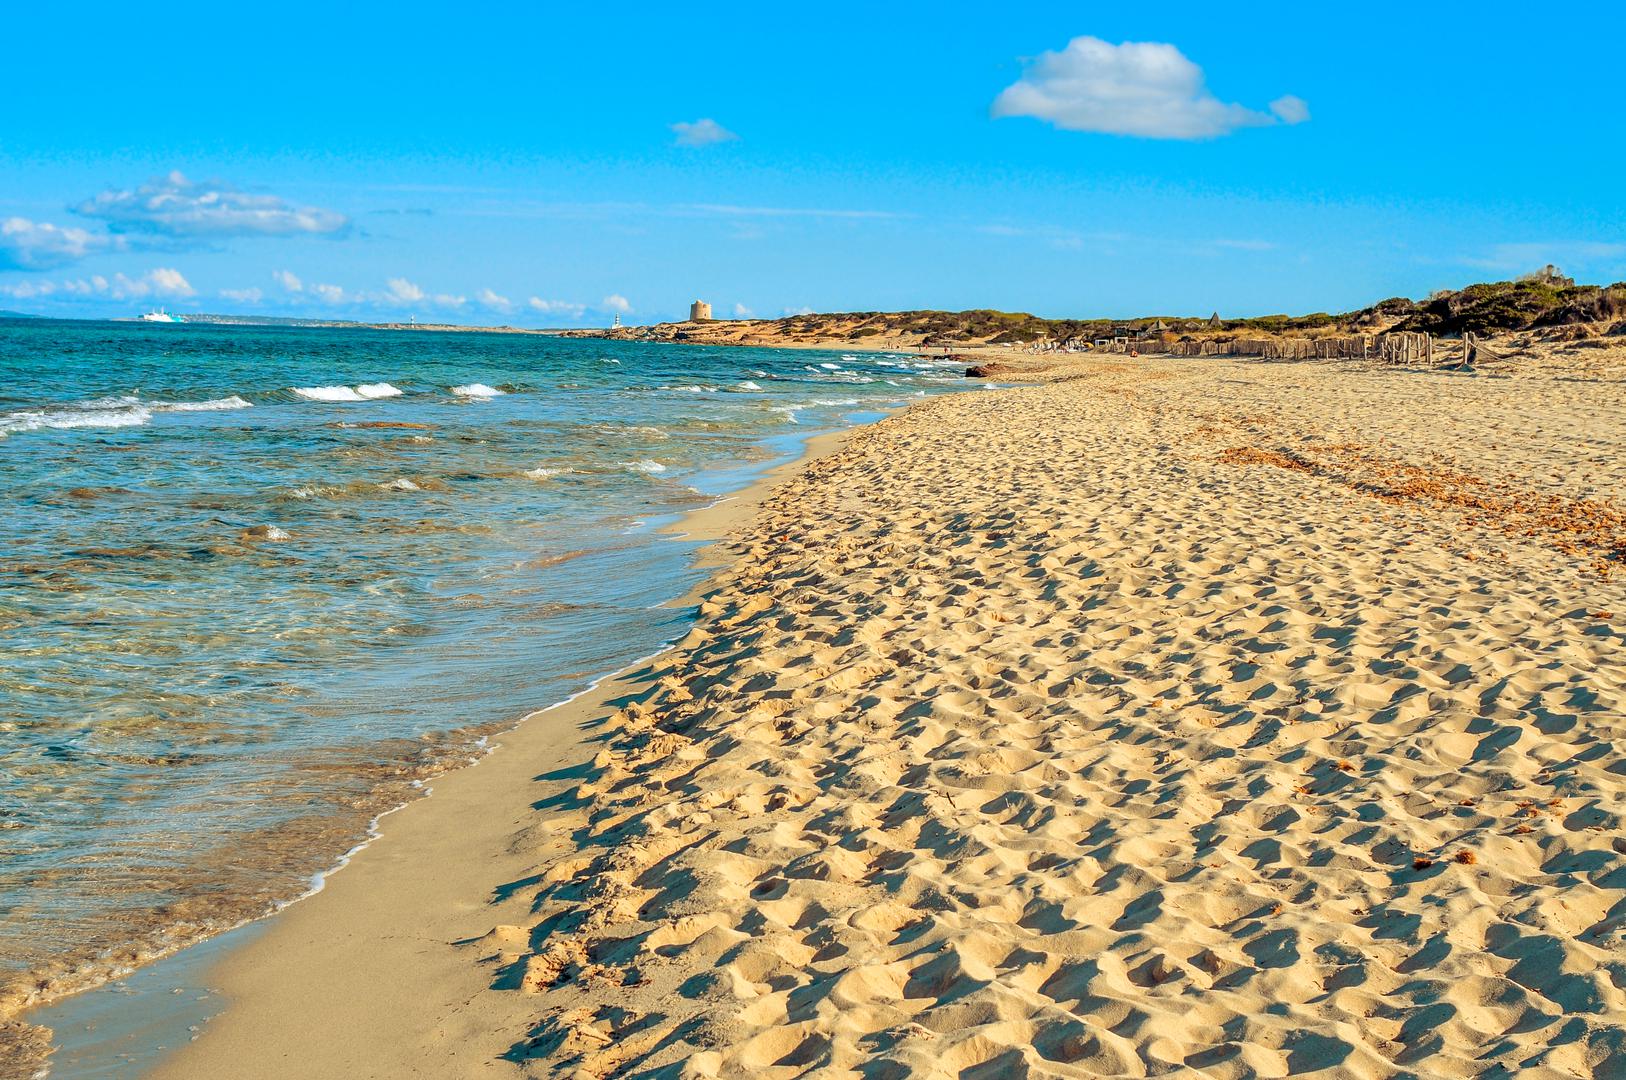 Platja des Cavallet, Ibiza, Španjolska: Smještena između tamnoplavog Mediterana i raznobojnih solana u blizini najjužnije točke Ibize, službena nudistička plaža Es Cavallet podijeljena je na različite dijelove, uključujući dio za zabave u klubovima na plaži i gay scenu. Plaža je i puna flamingosa koji se vole okupljati u plitkim slanim vodama.